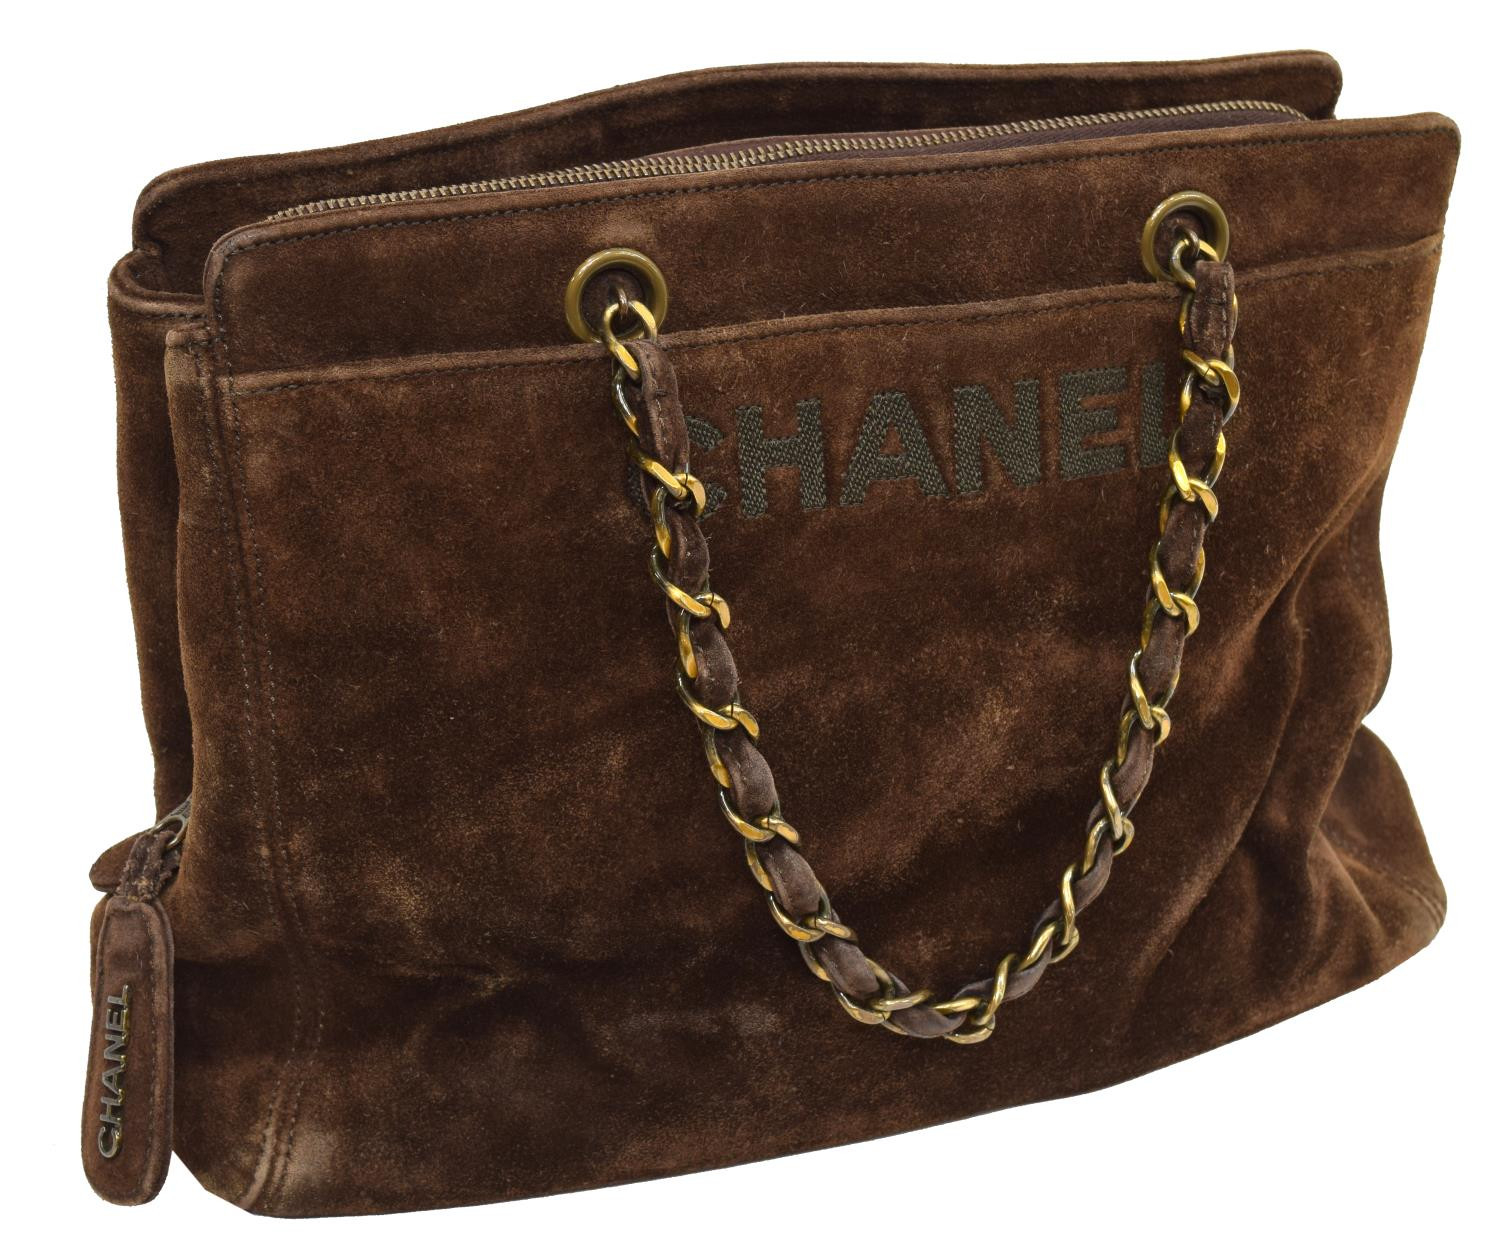 Chanel Brown Suede Shoulder Bag - Holidays Estates Auction  Chanel Advent Calendar Dust Bag